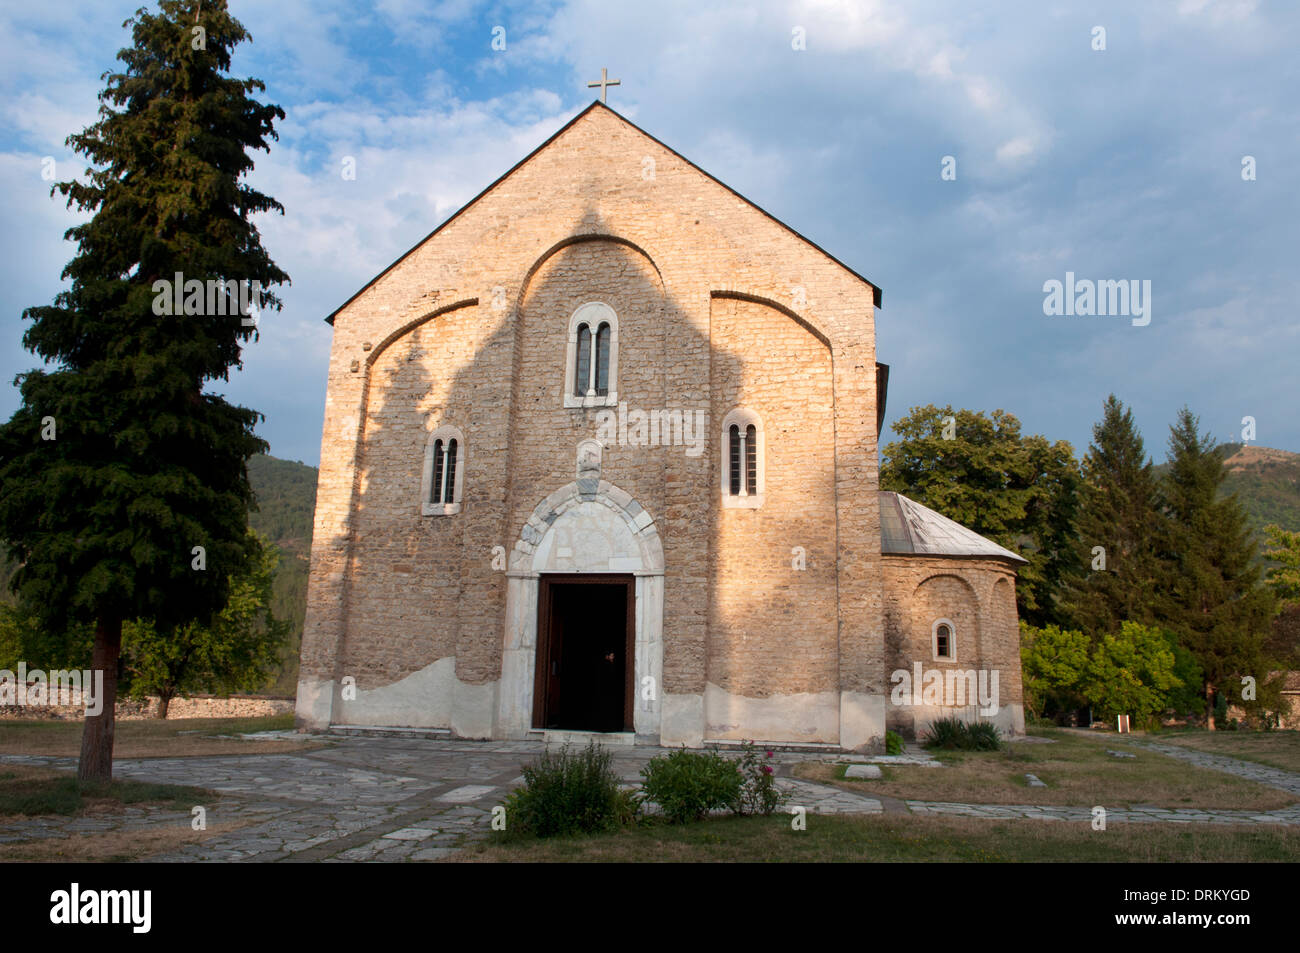 The Virgin's Church, Studenica Monastery, Kraljevo, Serbia Stock Photo